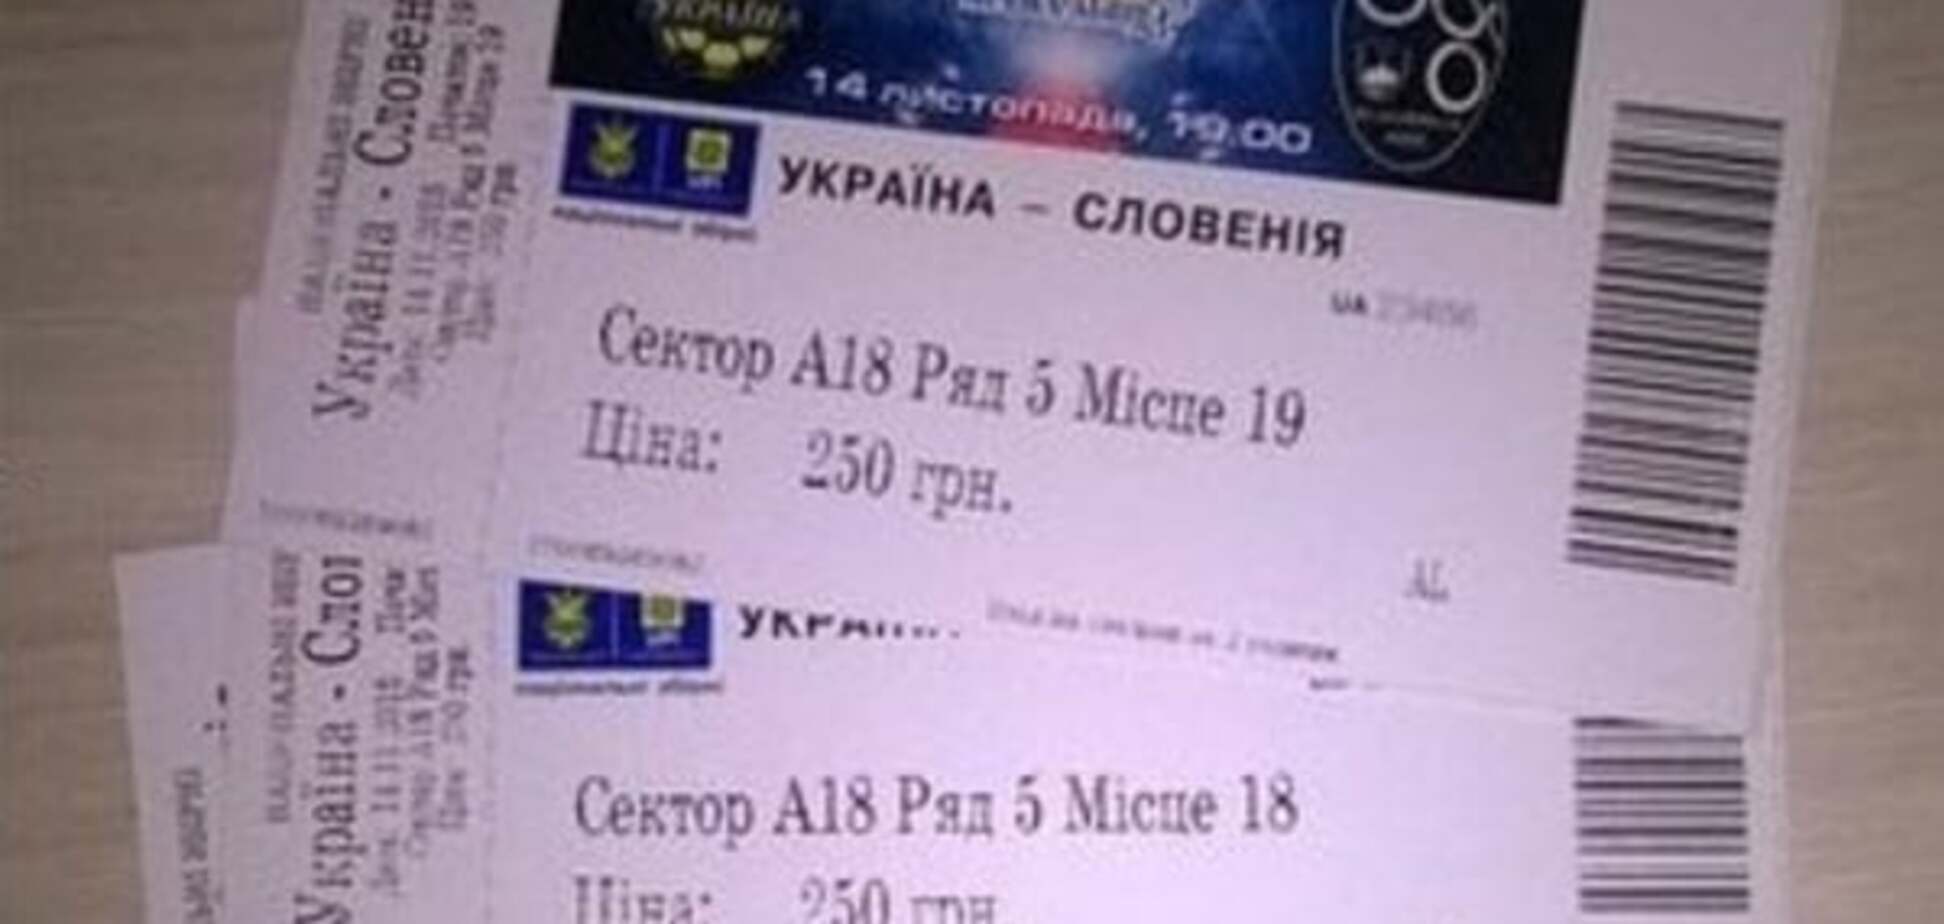 Появились дополнительные билеты на матч Украина - Словения